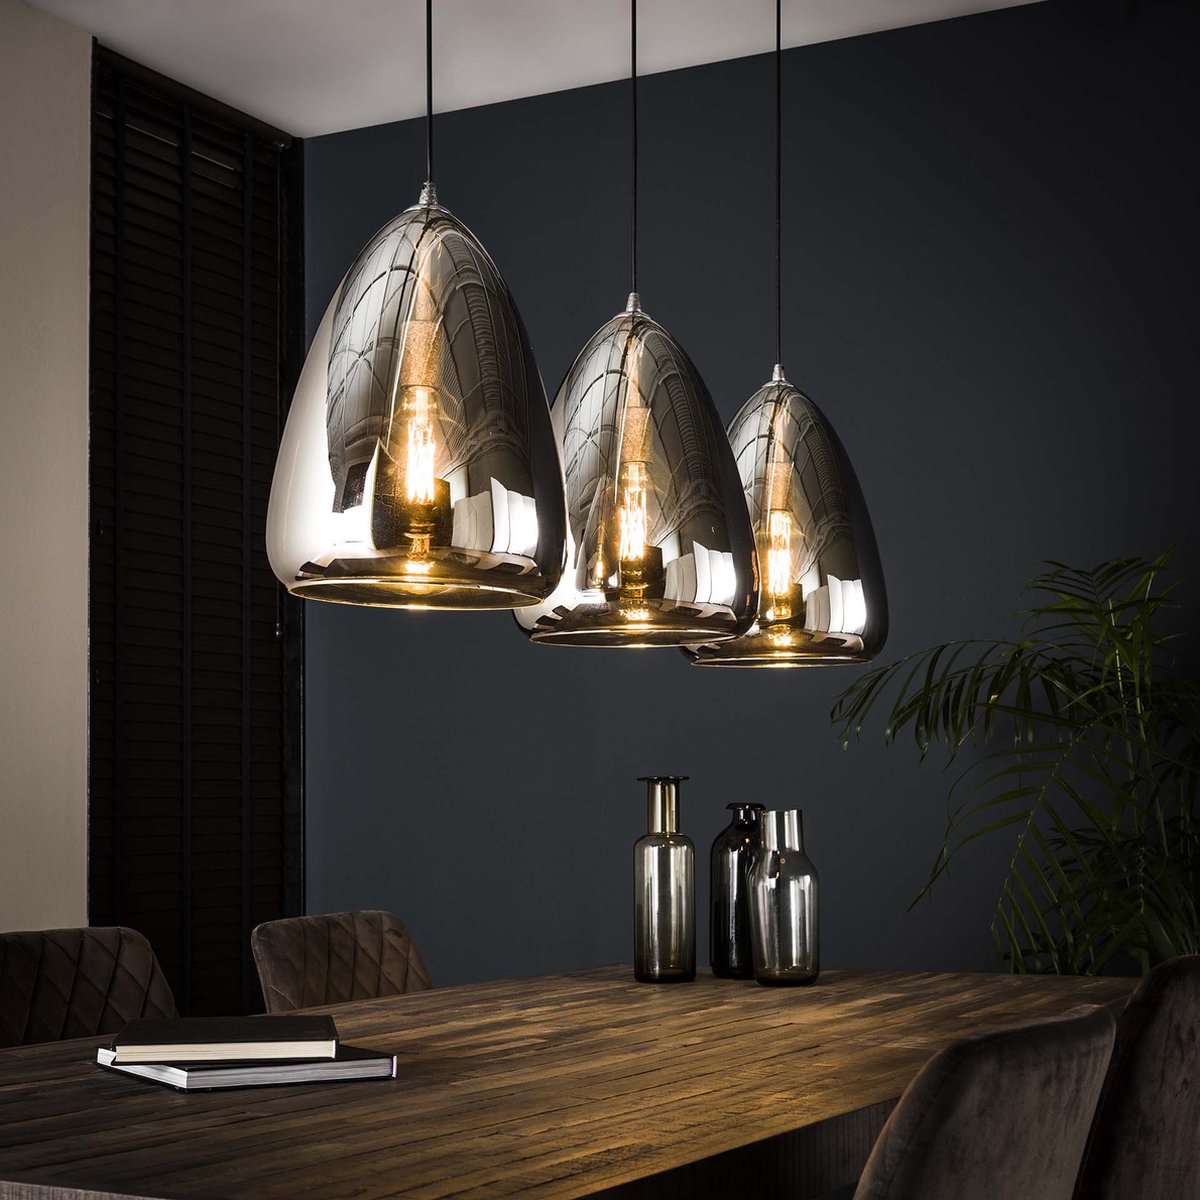 Hanglamp Silver Pearl chromed glass | 3 lichts | smoke / staal / zilver | glas / metaal | in hoogte verstelbaar tot 150 cm | 130 cm breed | eetkamer / eettafel lamp | modern / sfeervol design